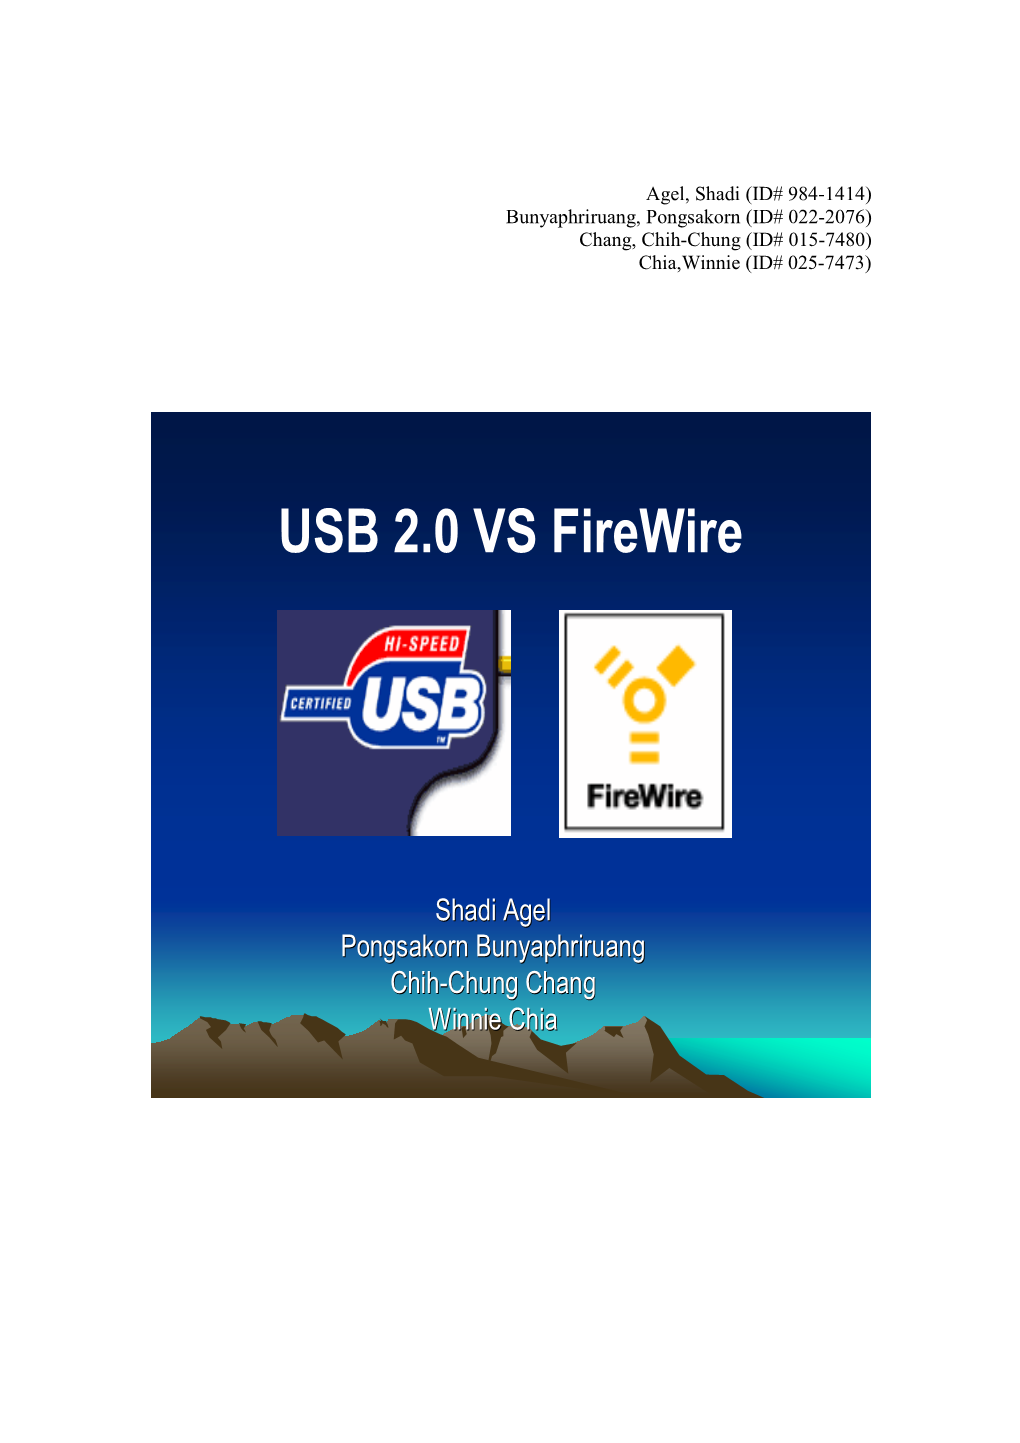 USB 2.0 VS Firewire